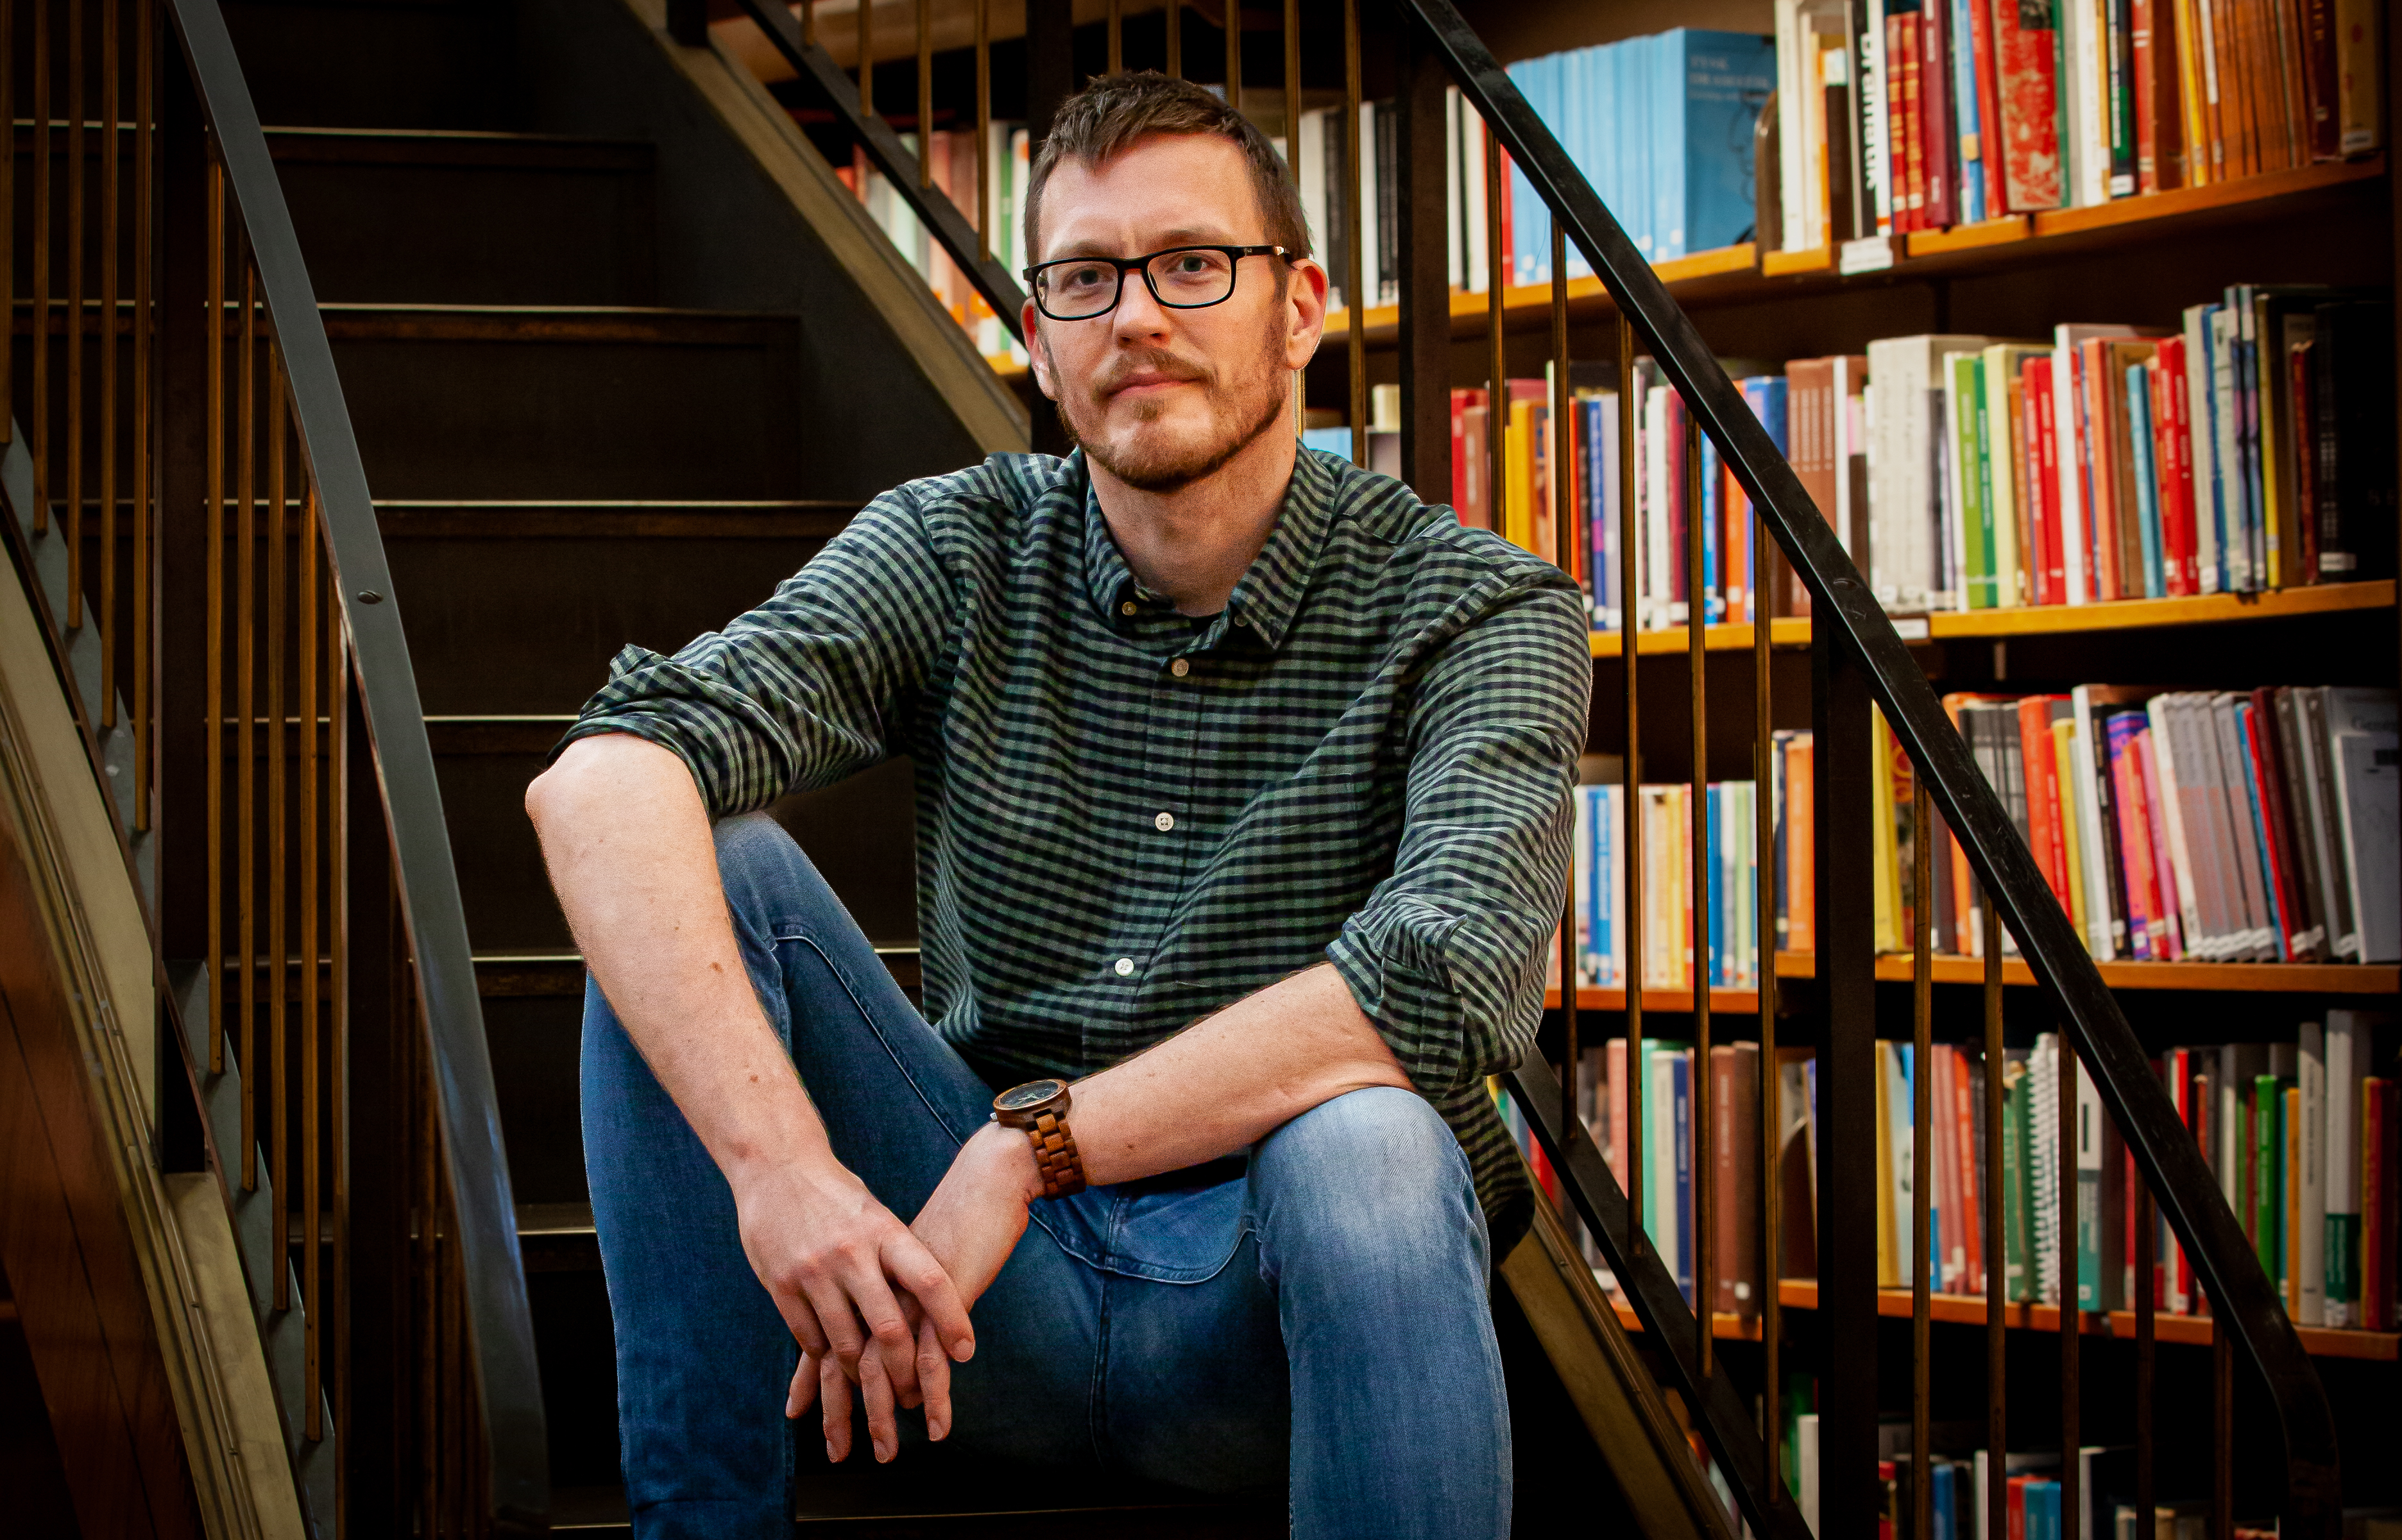 Niklas Hill sitter i en trappa i ett bibliotek, i bakgrunden ser man bokhyllor fyllda med böcker.